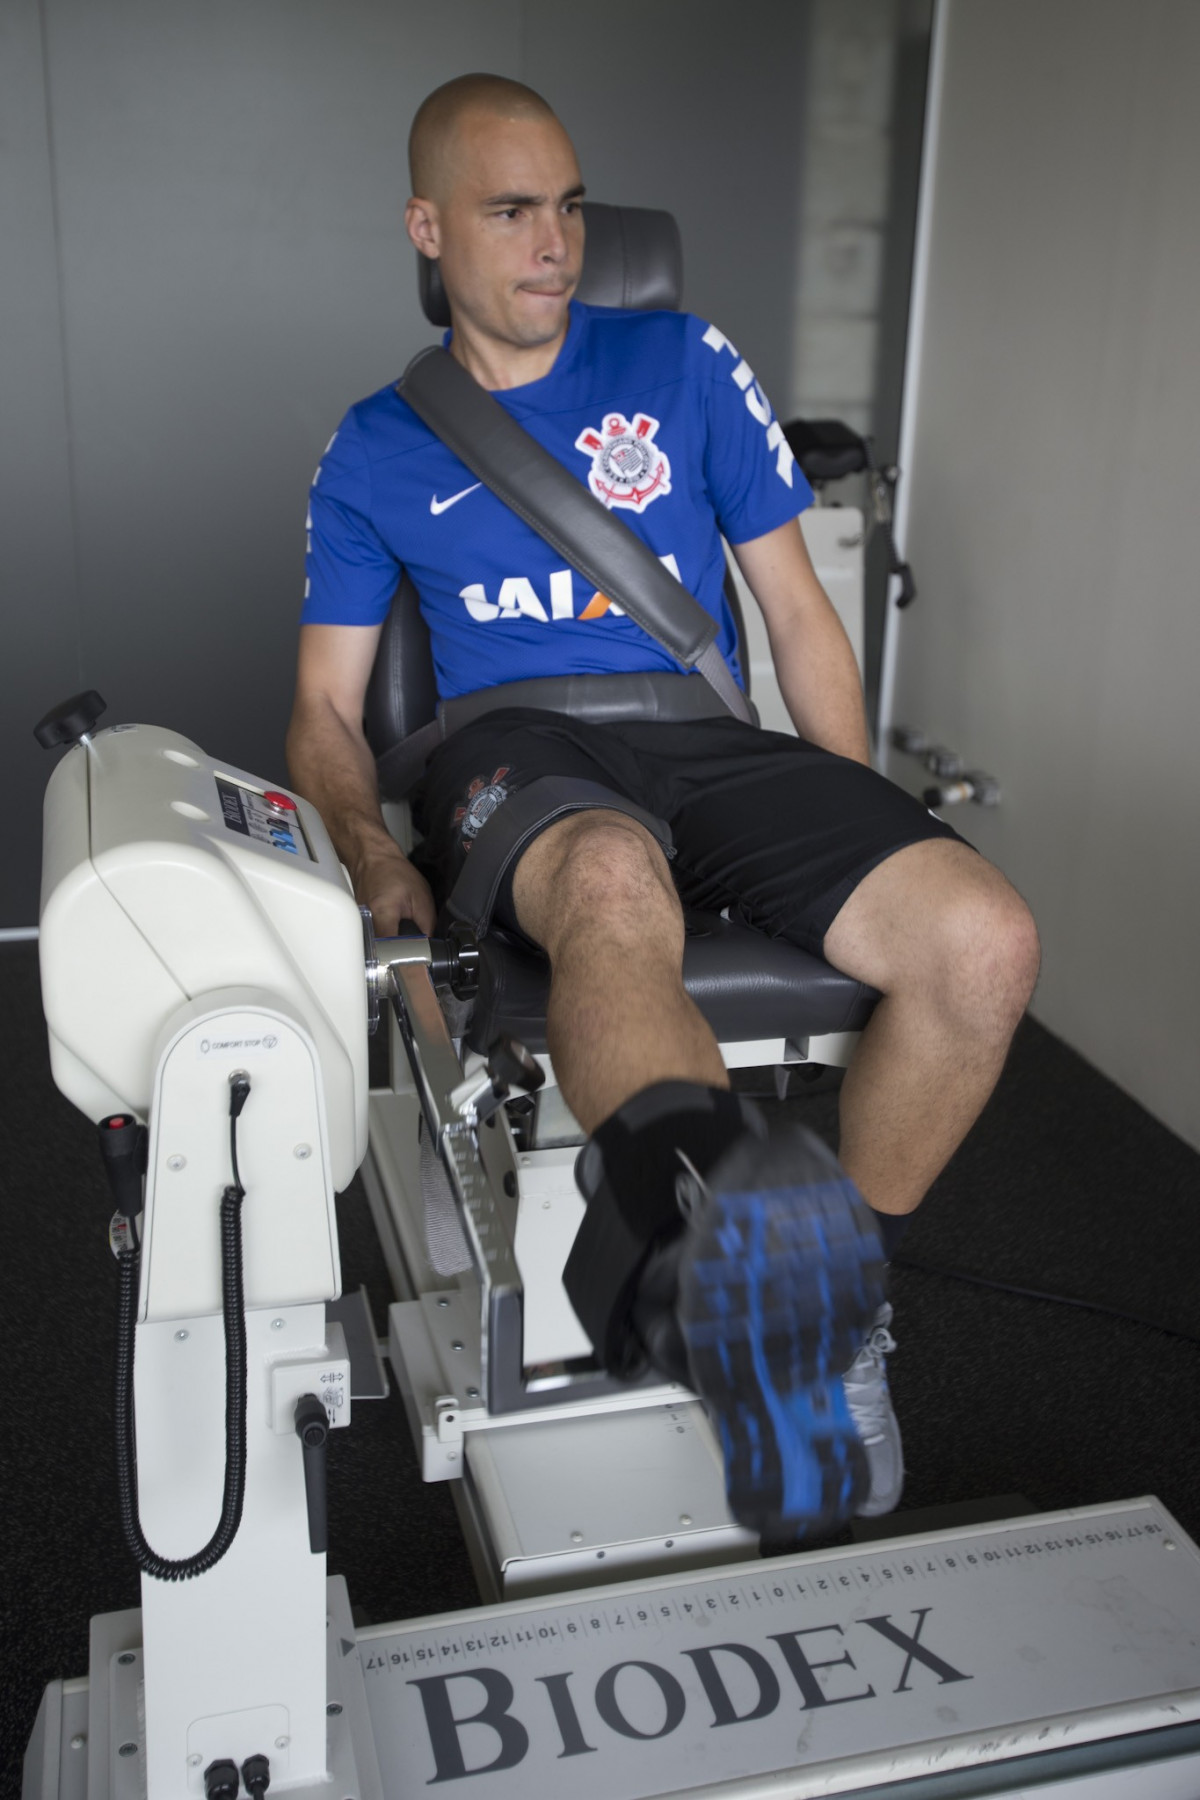 Na reapresentacao do time do Corinthians para o ano de 2014